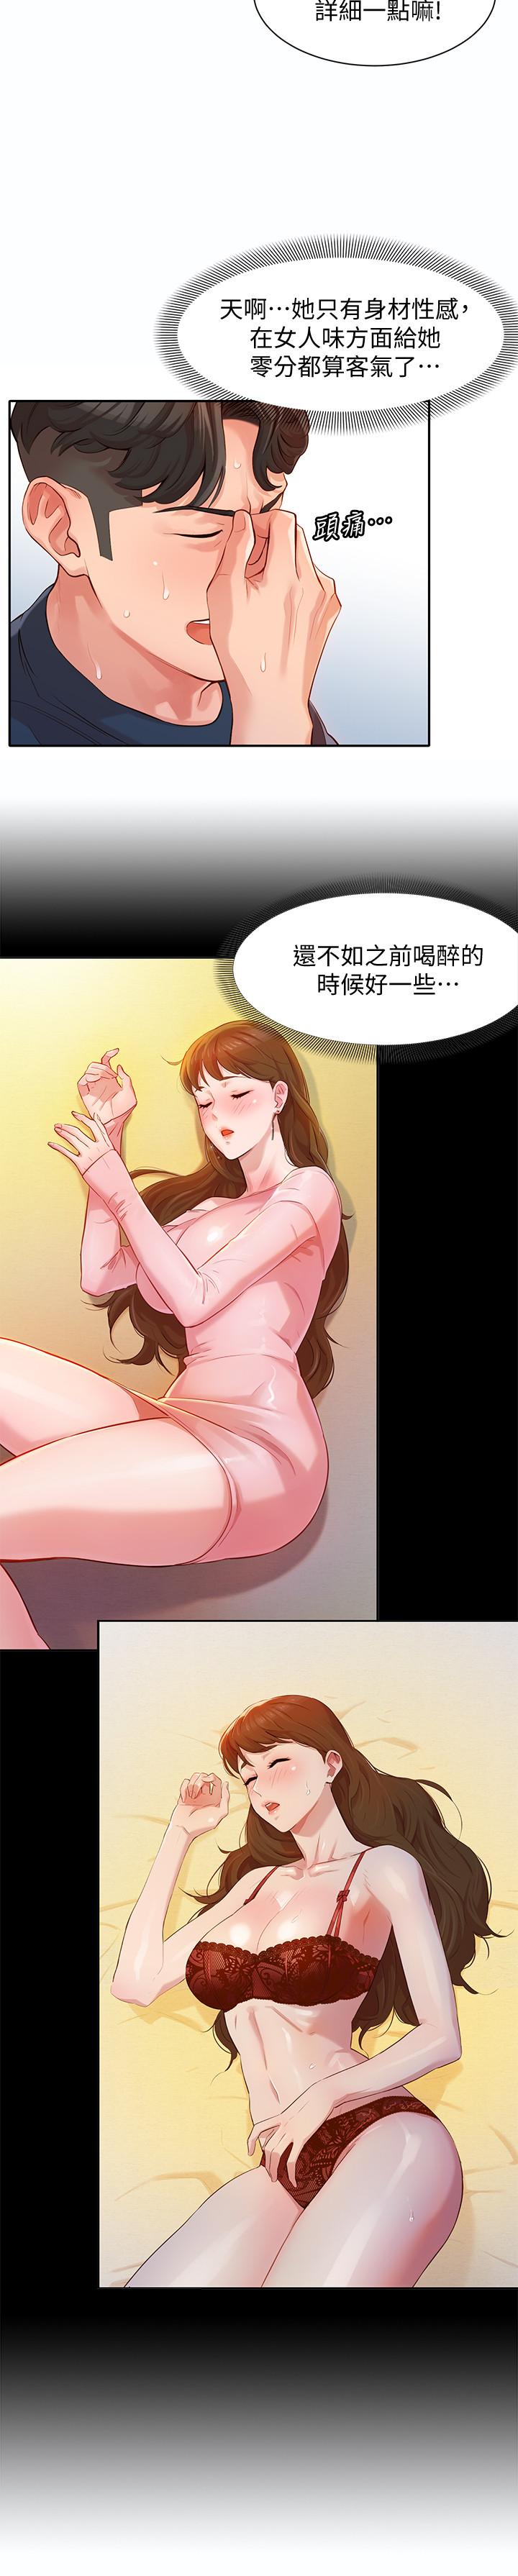 韩国污漫画 女神寫真 第9话-被看光光的私密部位 26